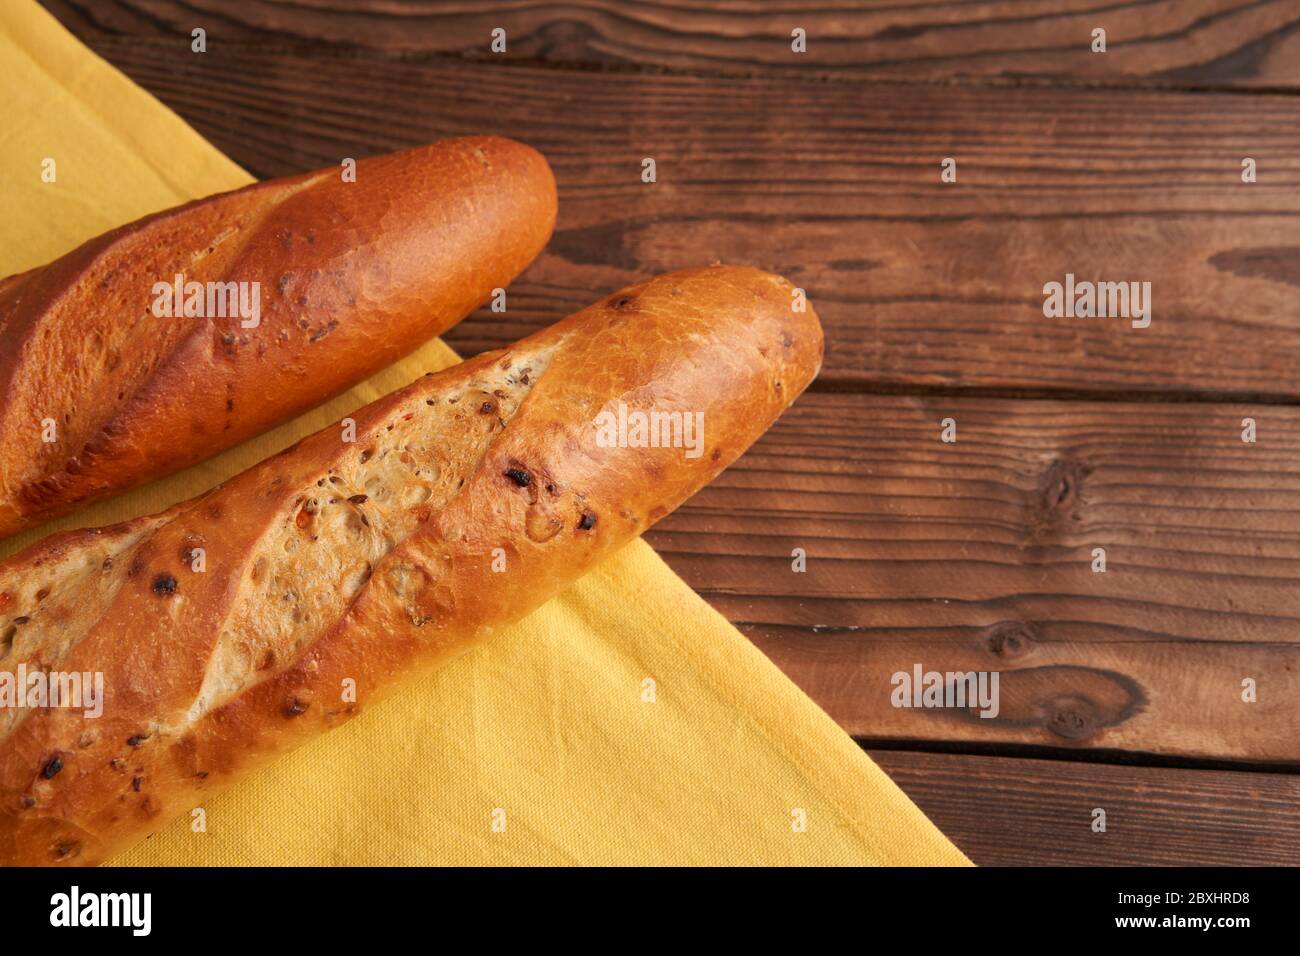 Deux baguettes françaises croustillantes sont des baguettes en tissu jaune en serviette en bois fond de table en baguettes en assortiment avec des graines de sésame pâtisseries nationales françaises classiques Banque D'Images